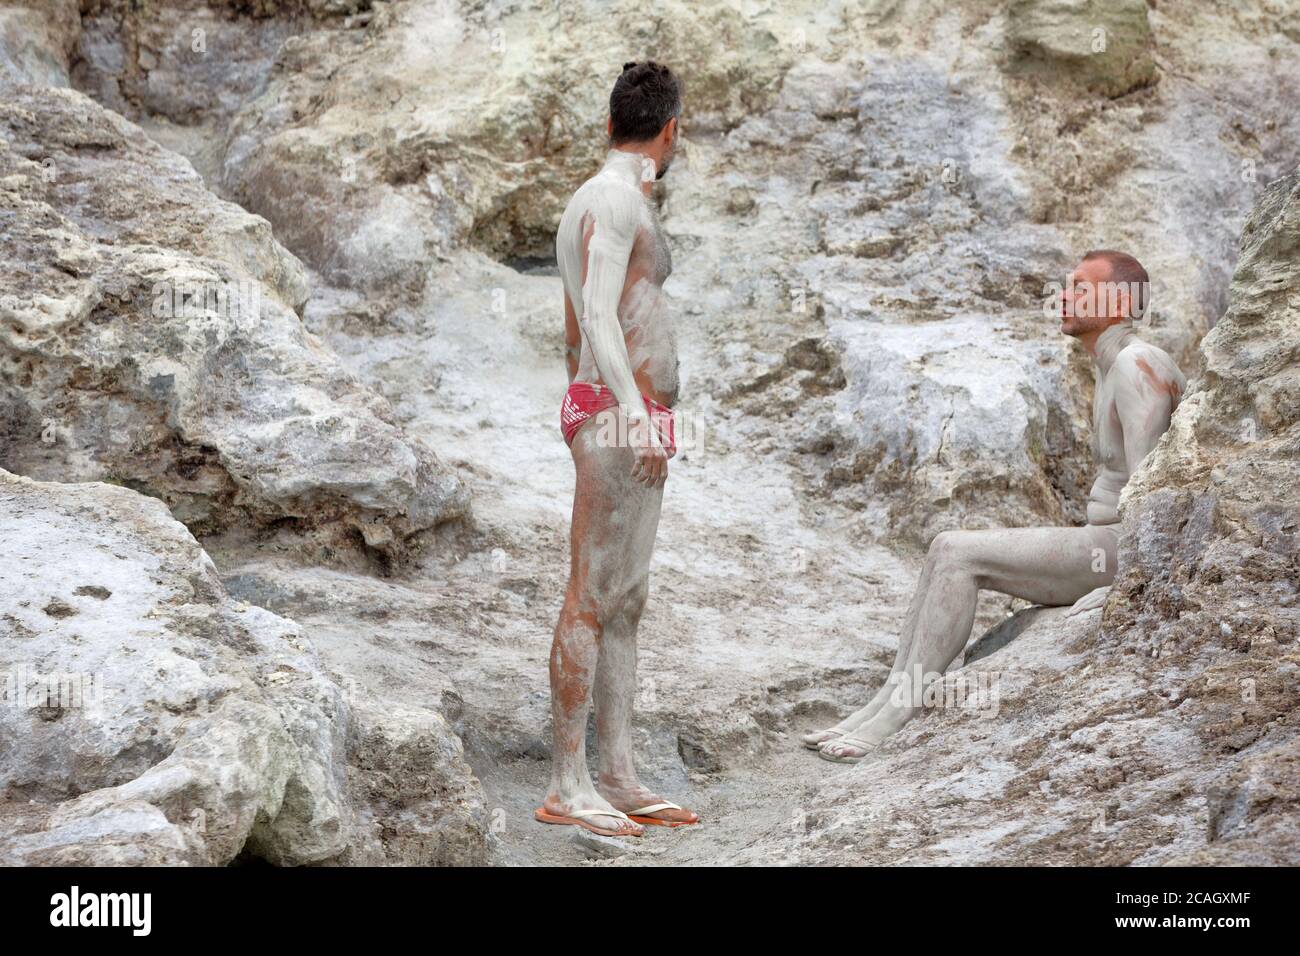 20.08.2018, Vulcano, Sizilien, Italien - Touristen und Einheimische nehmen ein heilendes Schwefelbad. Der Schwefelschlamm trocknet in den warmen Steinhöhlen. Vulcano gehört zu t Stockfoto